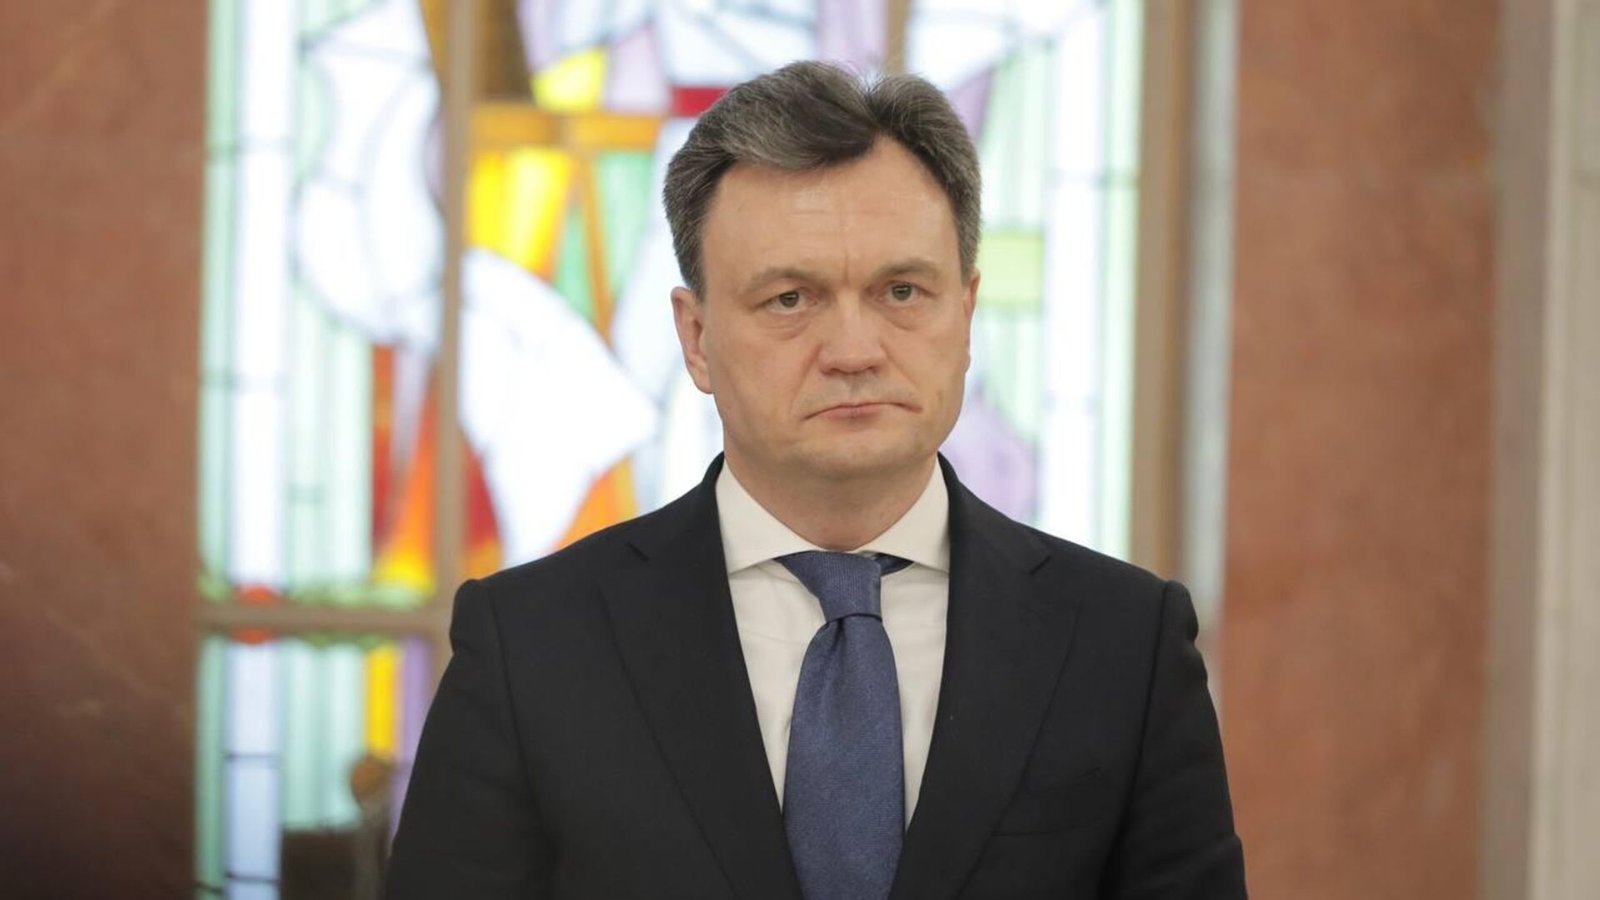 New Prime Minister Dorin Recean Appointed in Moldova Following Resignation of Natalia Gavrilita